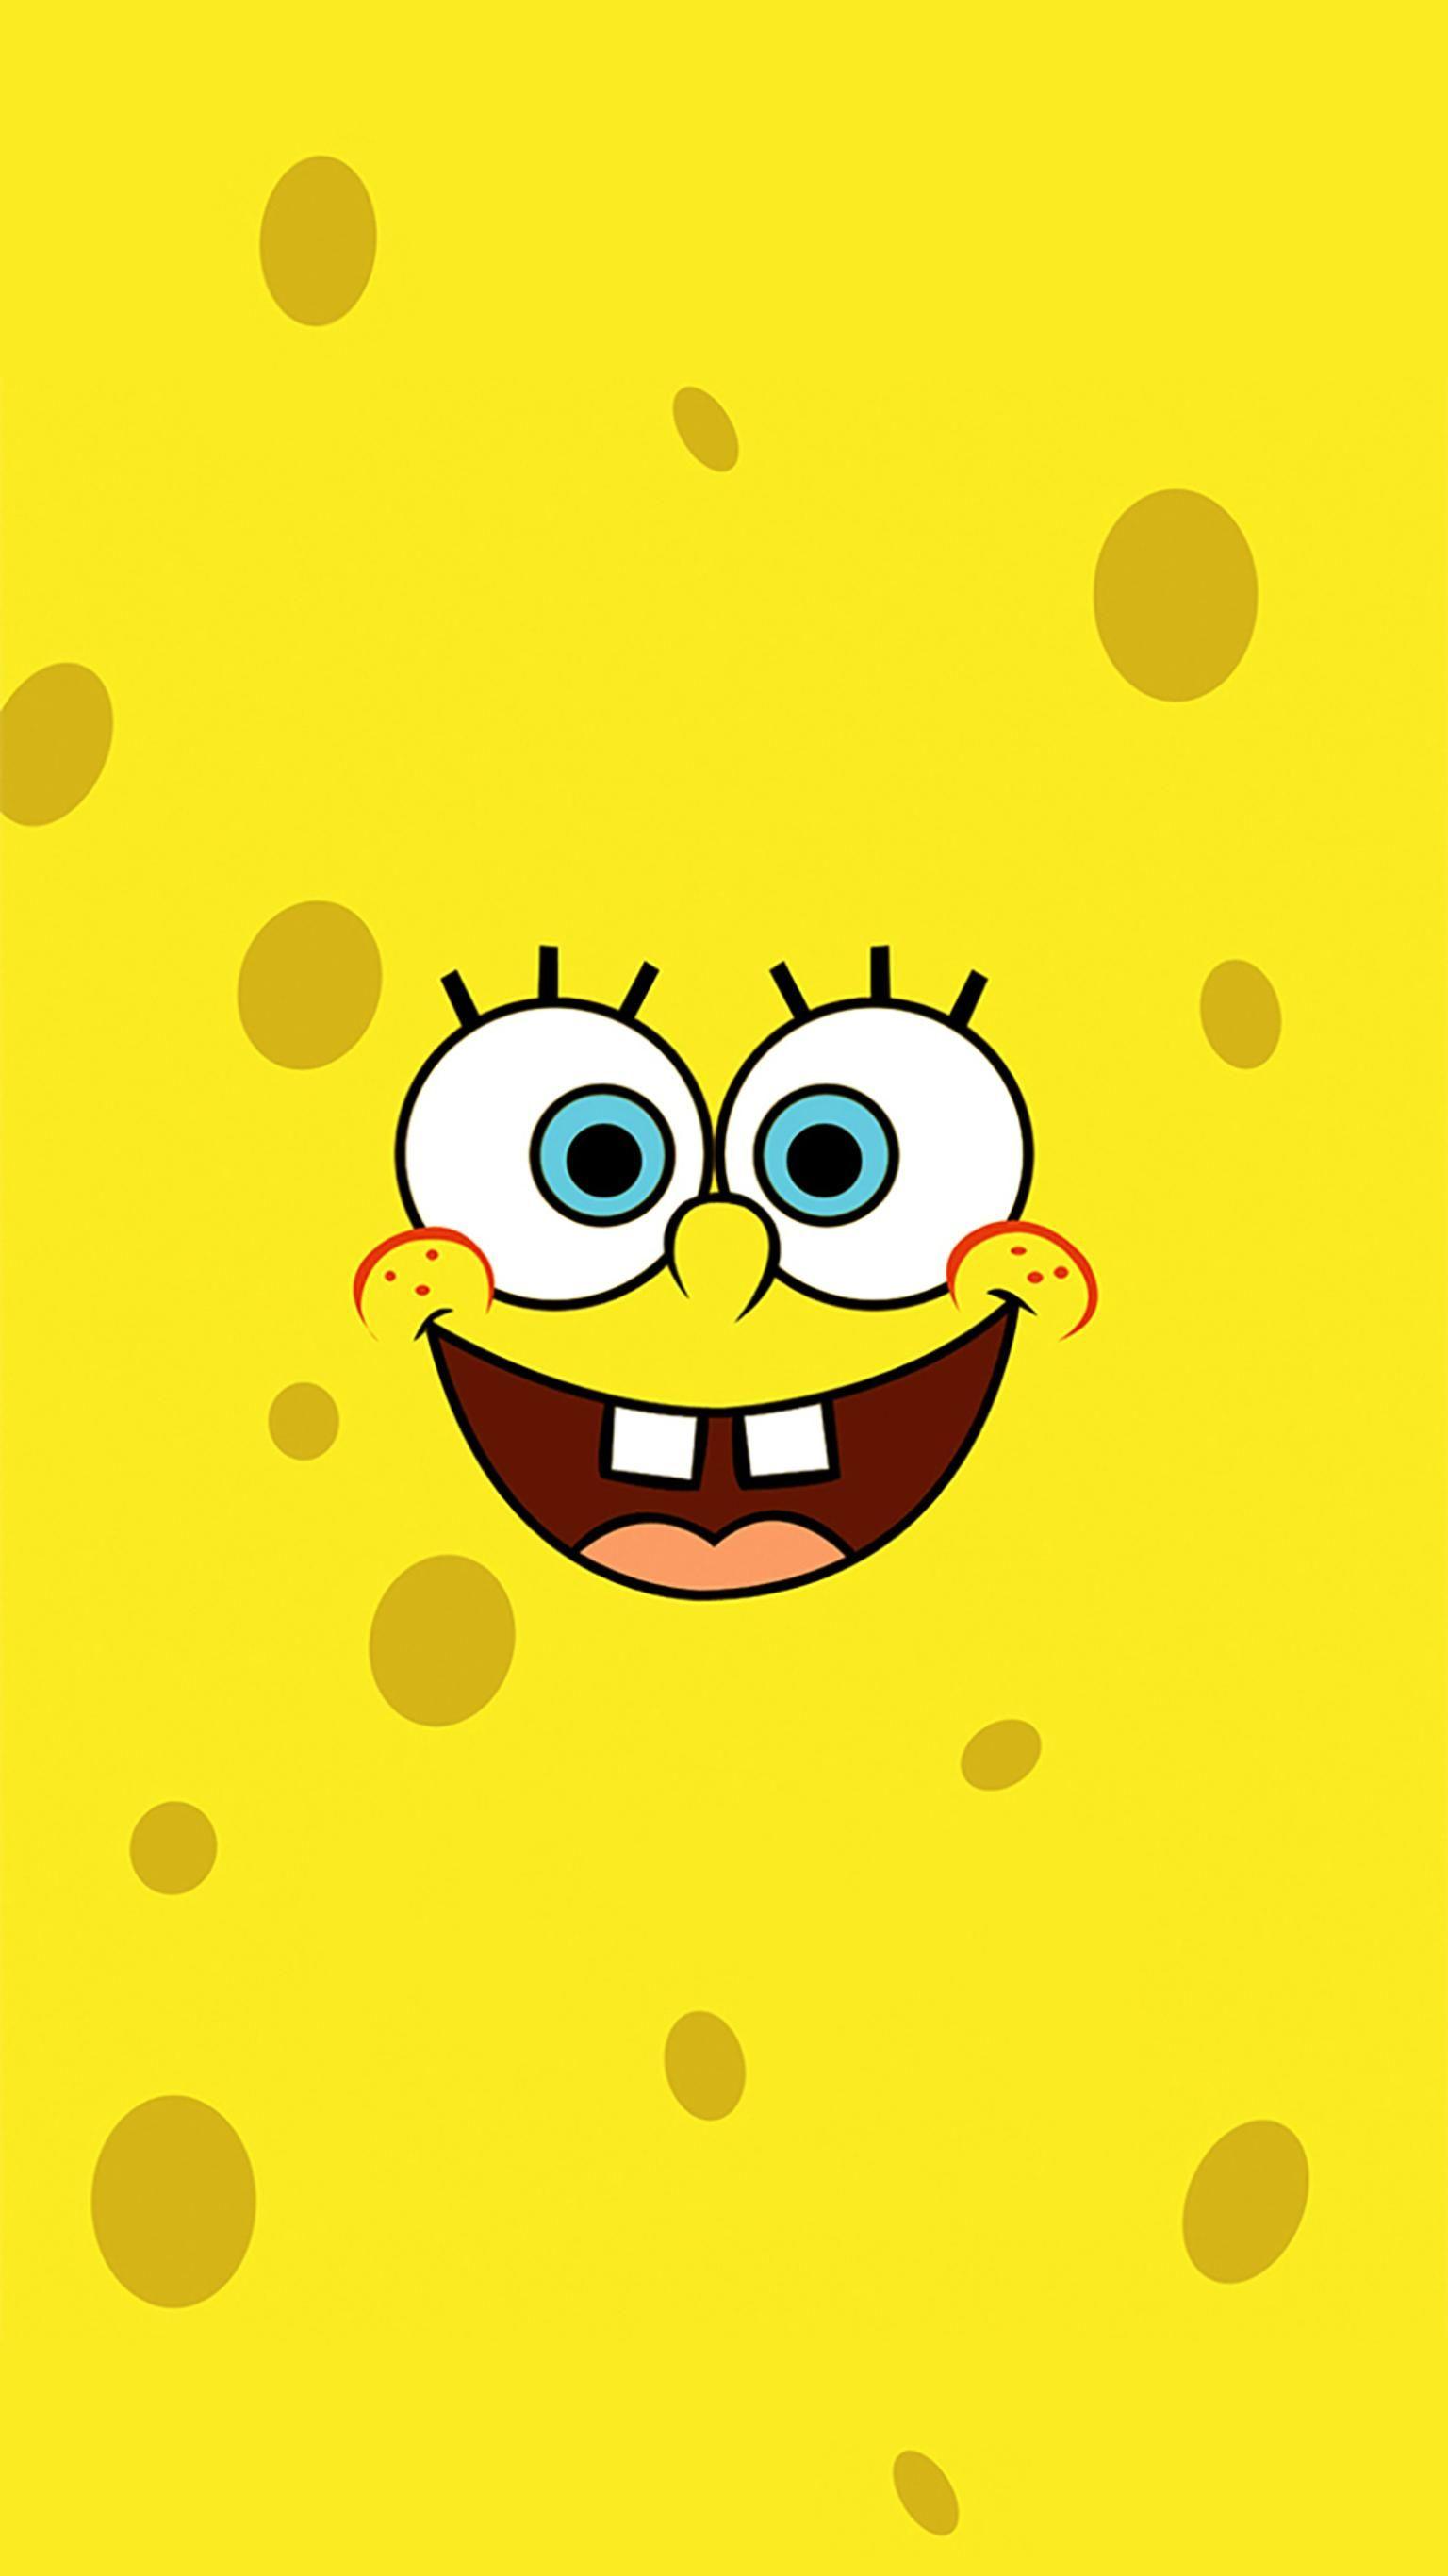 SpongeBob SquarePants Phone Wallpaper. Spongebob